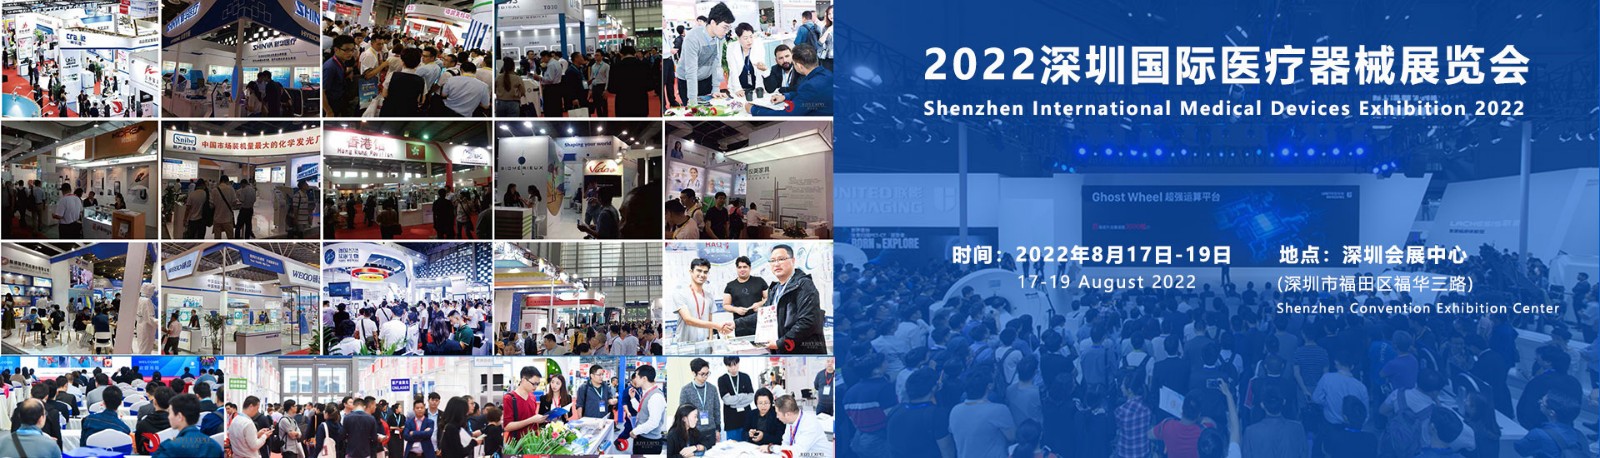 2022北京国际医疗器械展览会:展位申请